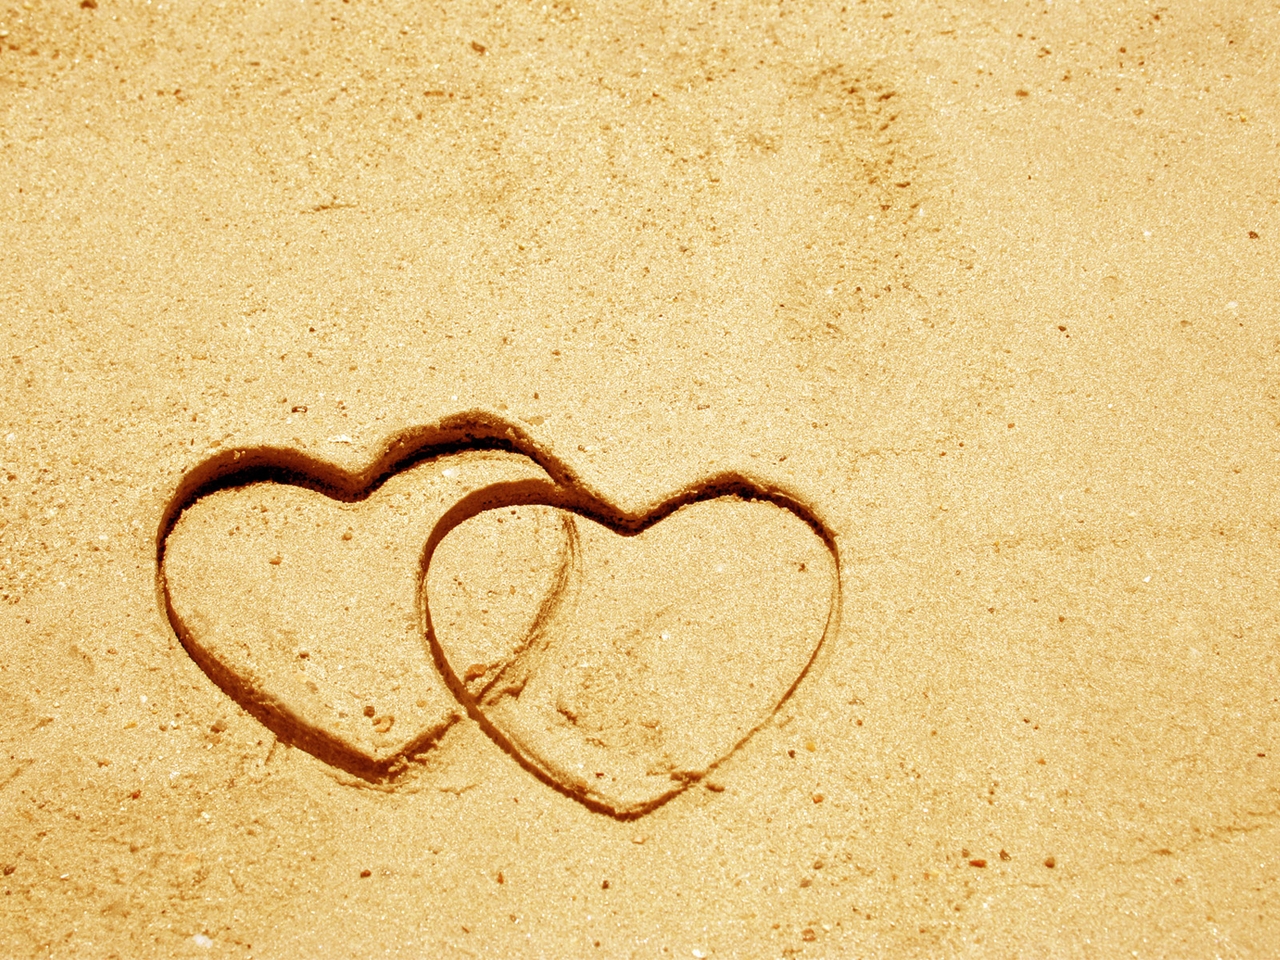 Картинка: Сердечки, песок, рисунок, пара